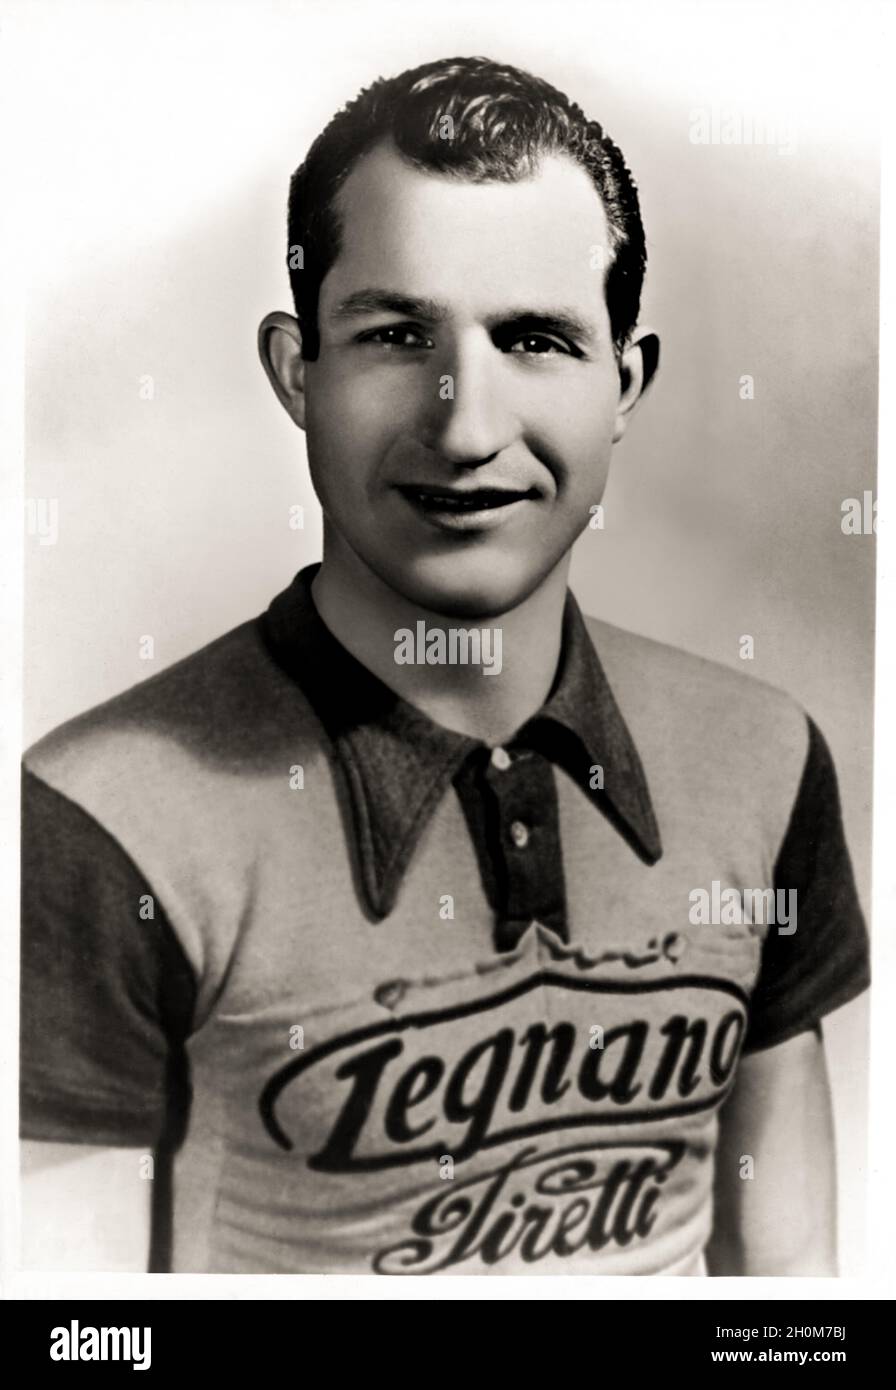 1948 Ca, ITALIEN : der am meisten gefeierte italienische Radfahrer GINO BARTALI ( 1914 - 2000 ). Unbekannter Fotograf. - campione sportivo - Champion - HELD - SPORT - CICLISMO - CICLISTA - ZYKLISMUS - Byke - Smile - sorriso - GIRO D'ITALIA - TOUR DE FRANCE --- Archivio GBB Stockfoto